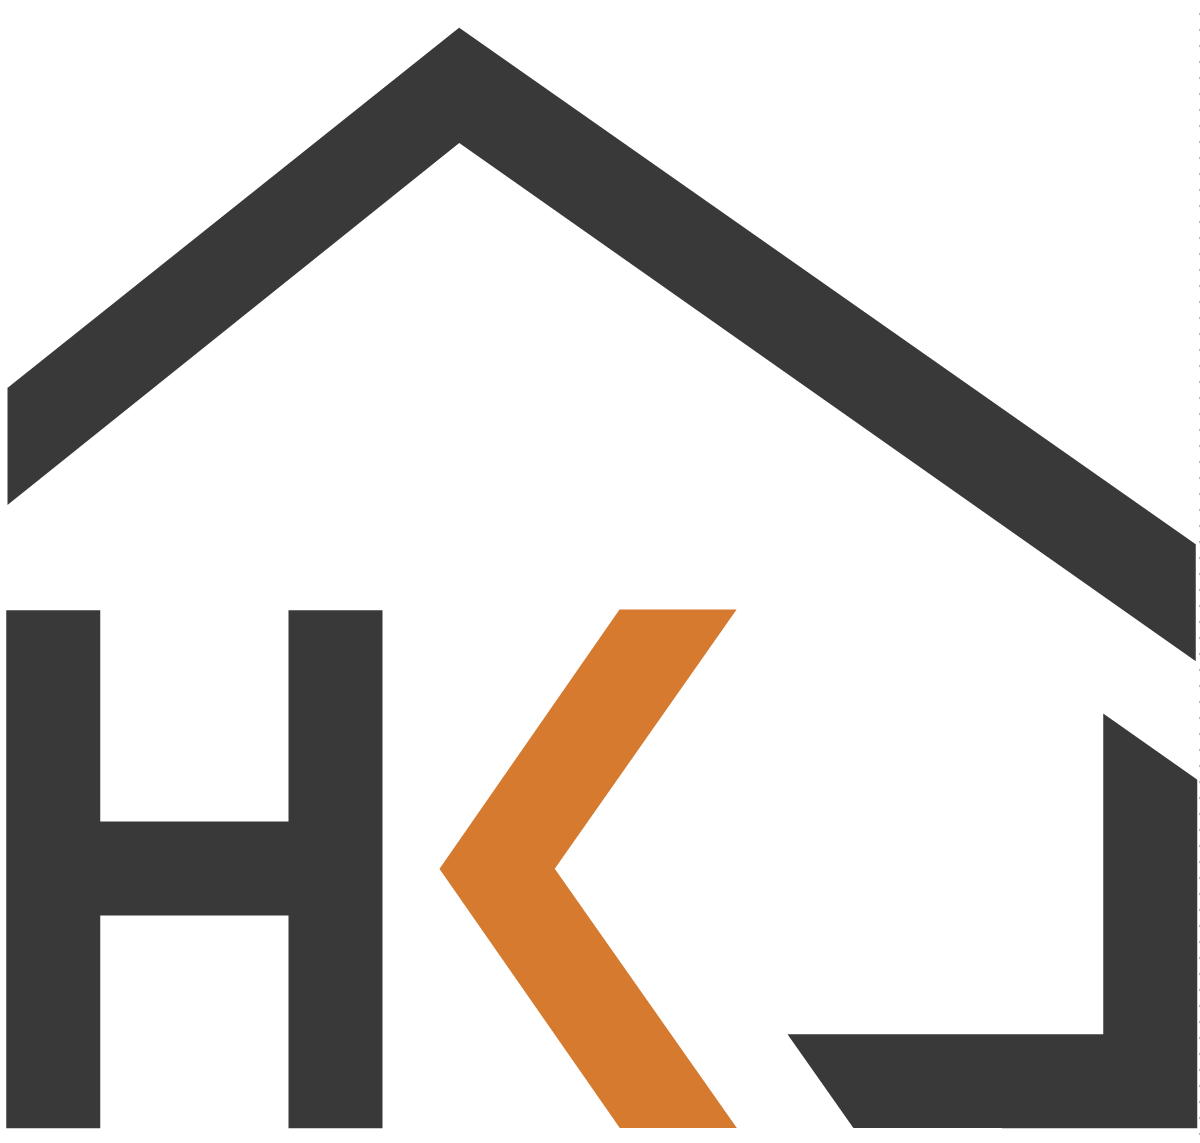 ubytování hk logo